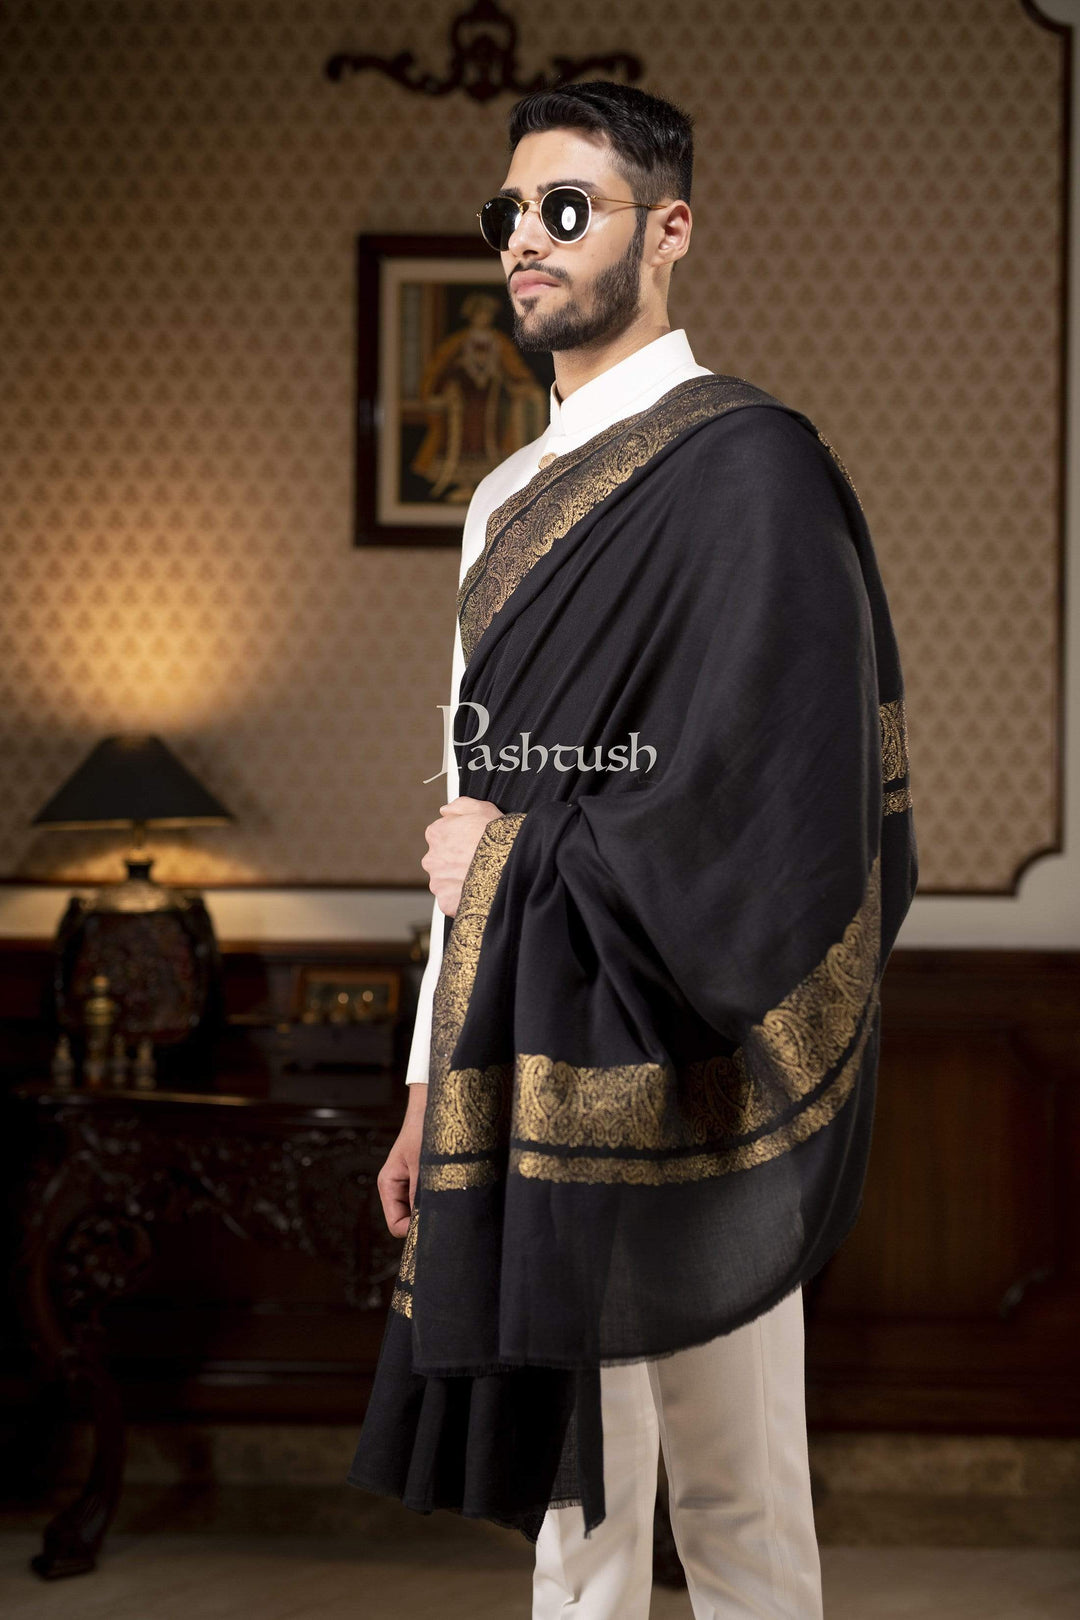 Pashtush India Gift Pack Pashtush Mens Extra Fine Count Wool Shawl, Metallic Tilla Border Weave, Full Size